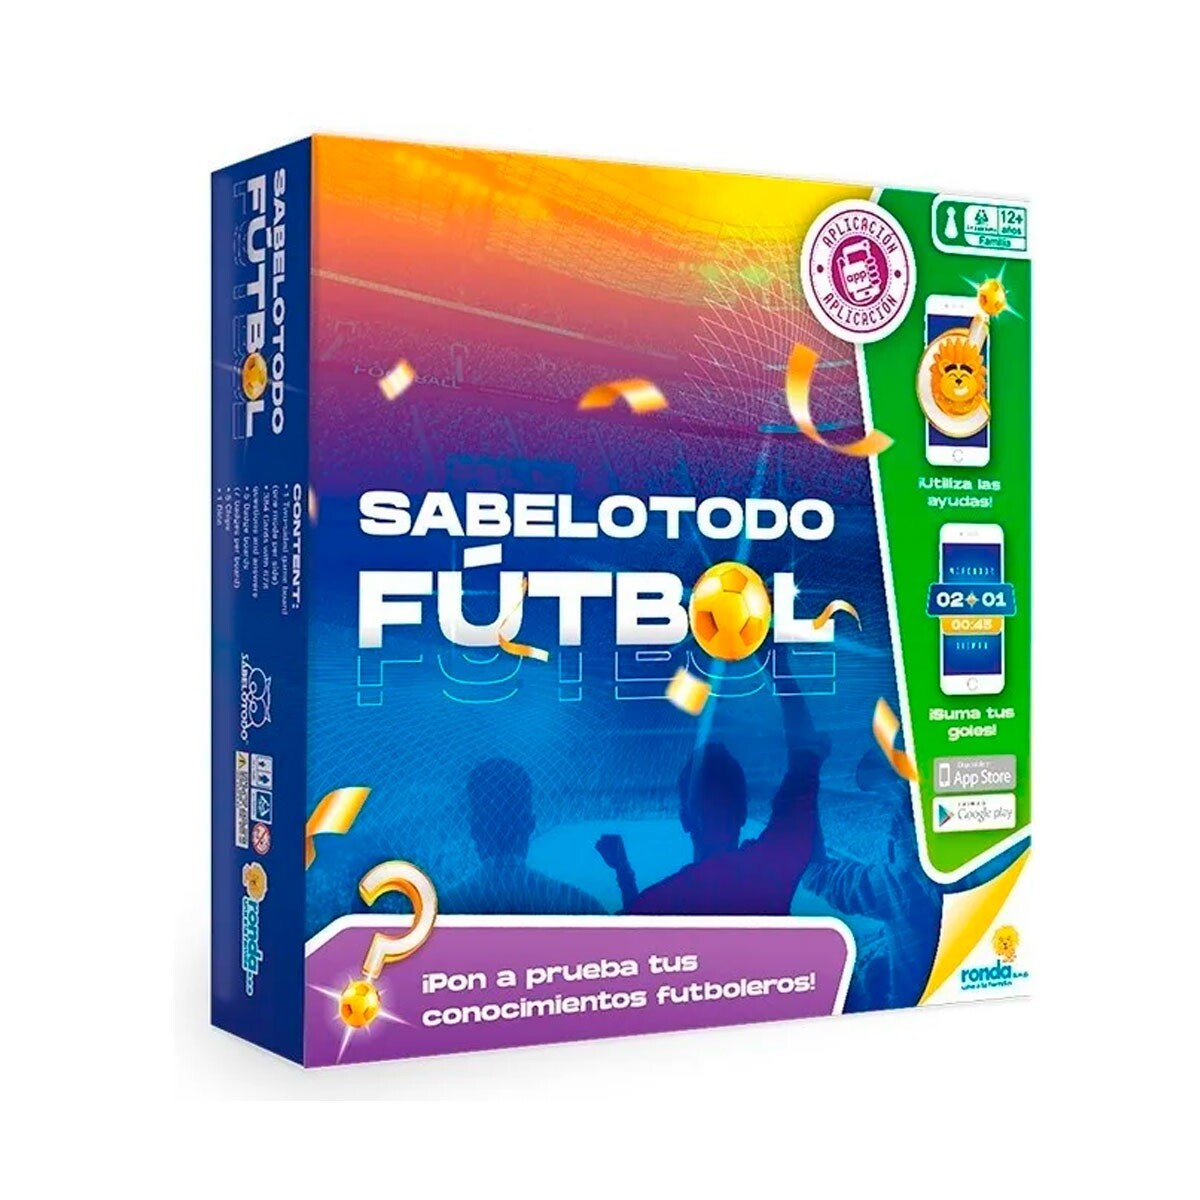 SABELOTODO FUTBOL - Único 